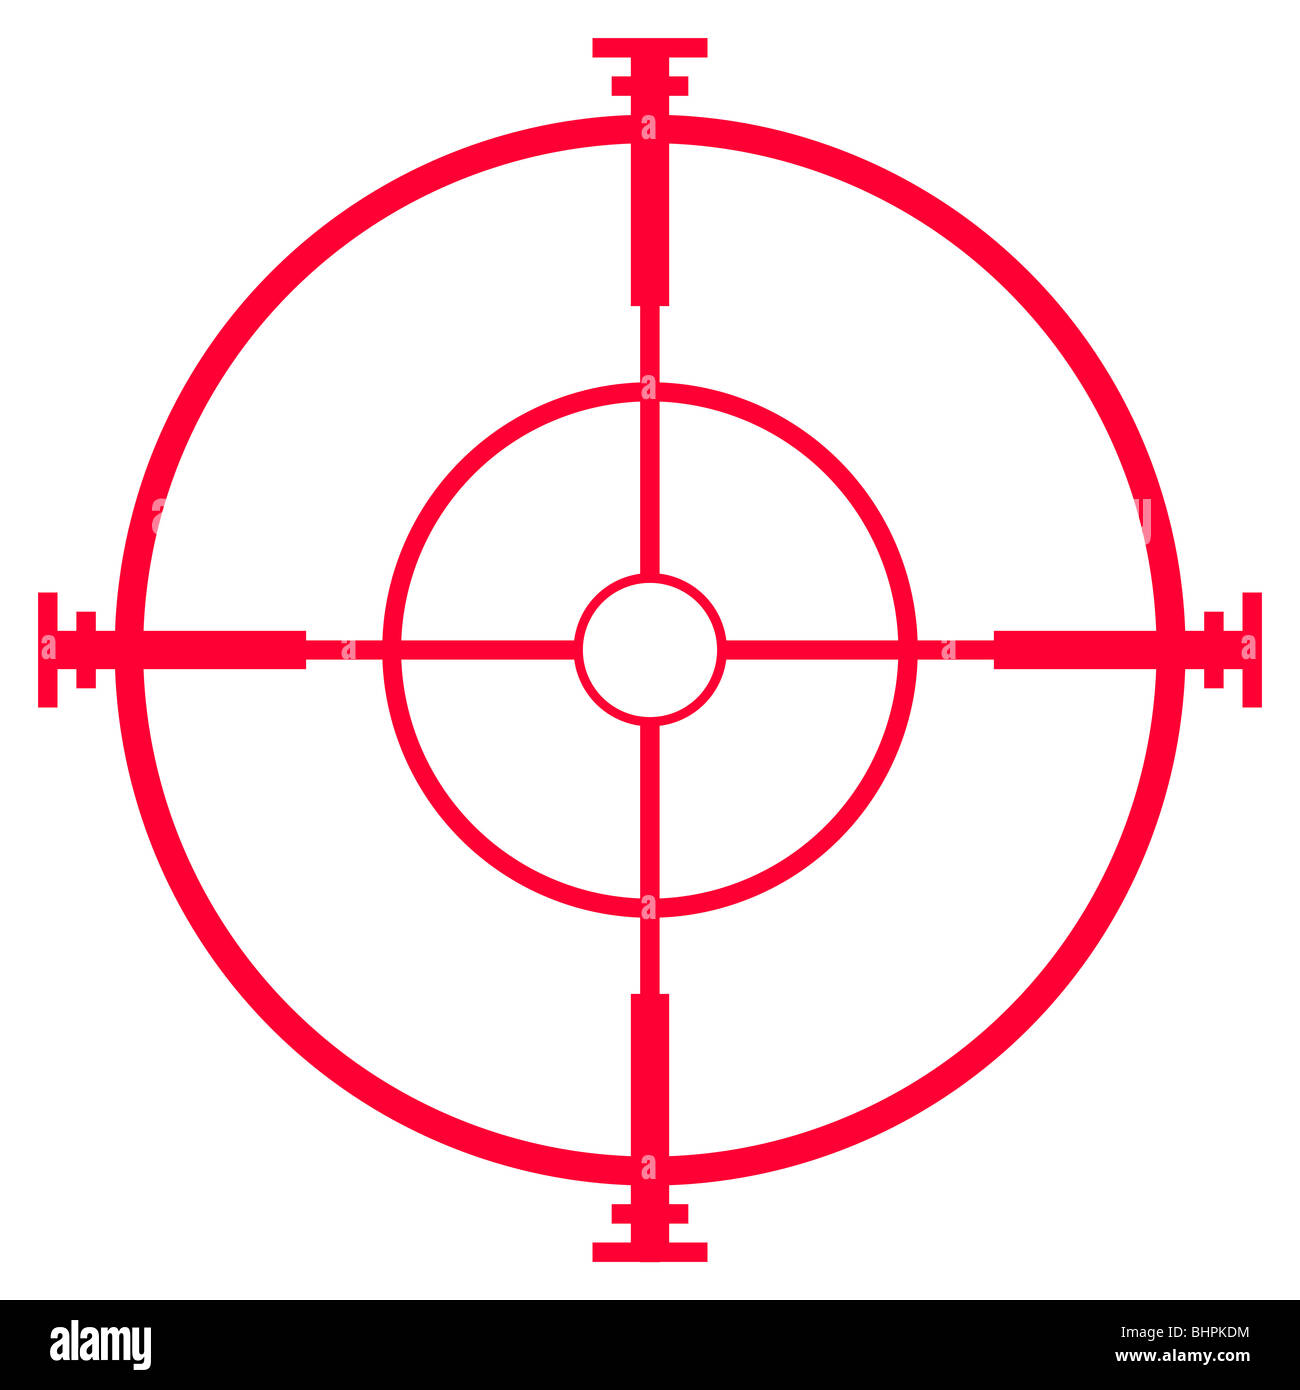 Ilustración de un rifle de francotirador vista o alcance, aislado sobre fondo blanco. Foto de stock